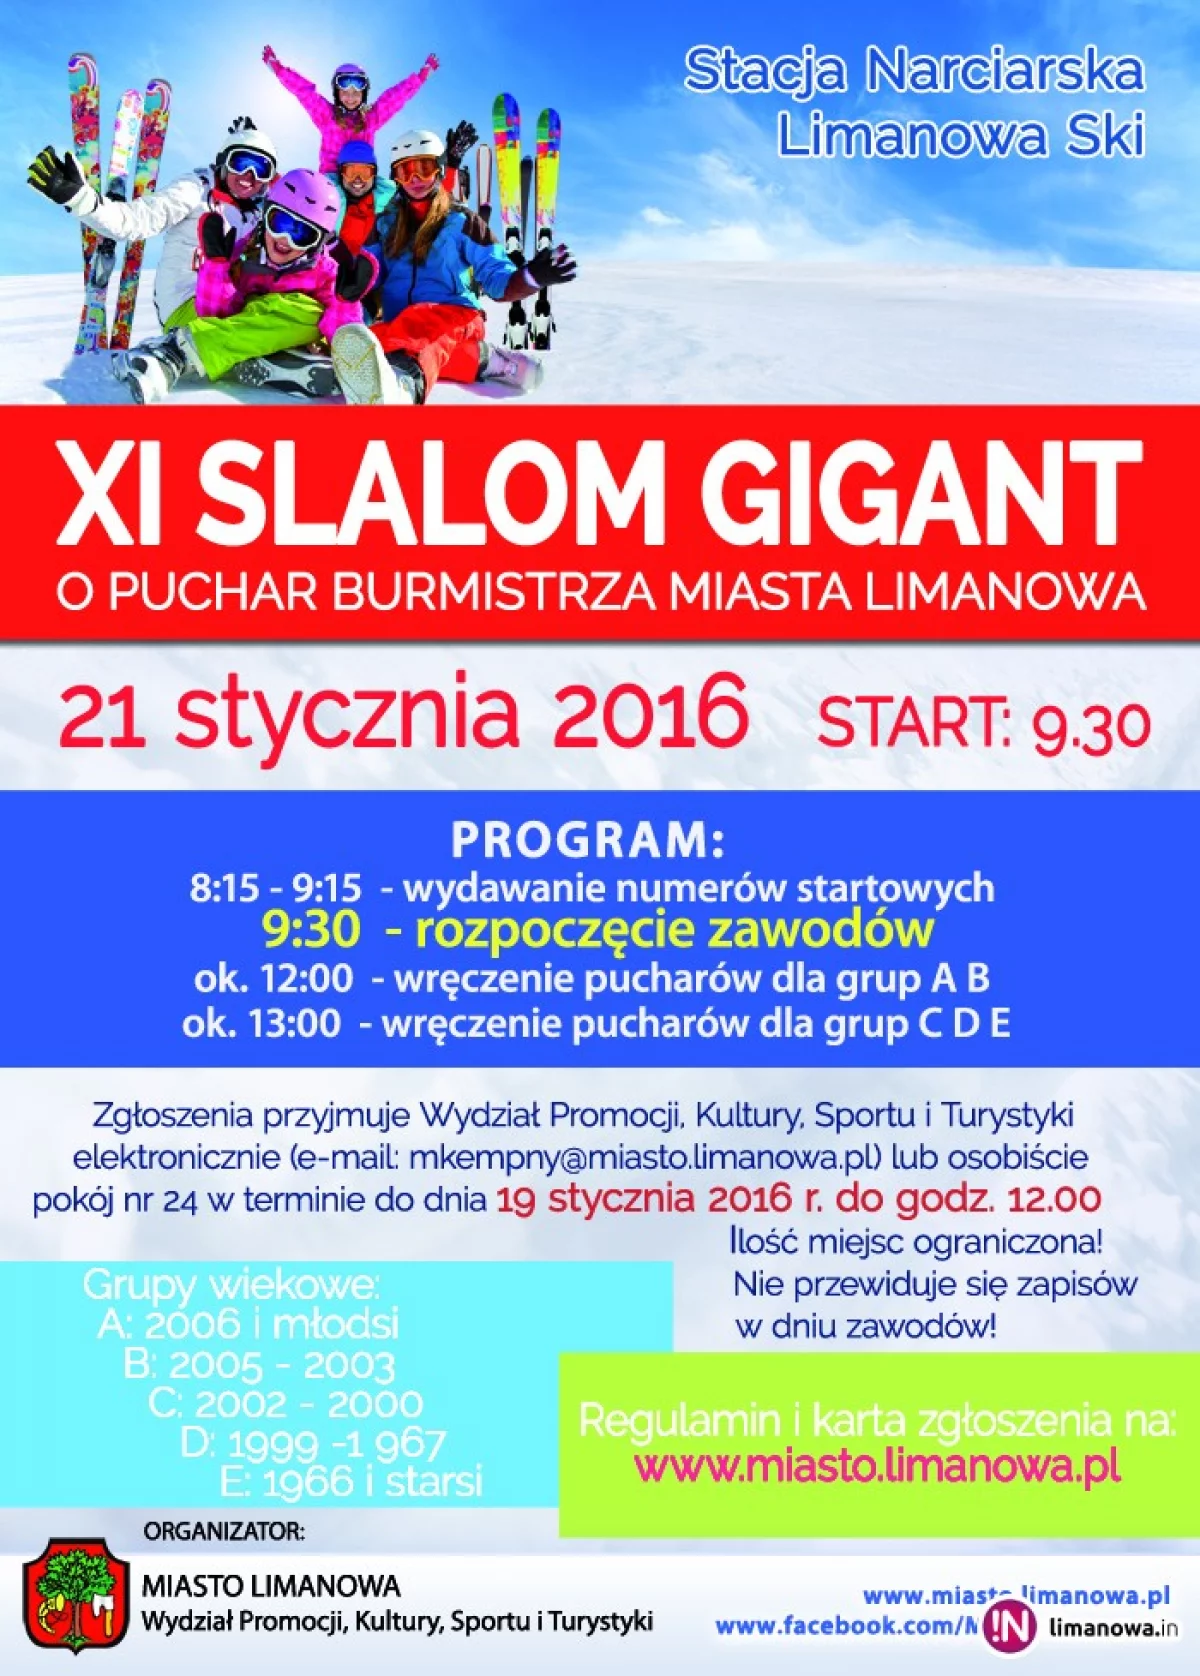 Zapisz się na Slalom Gigant!